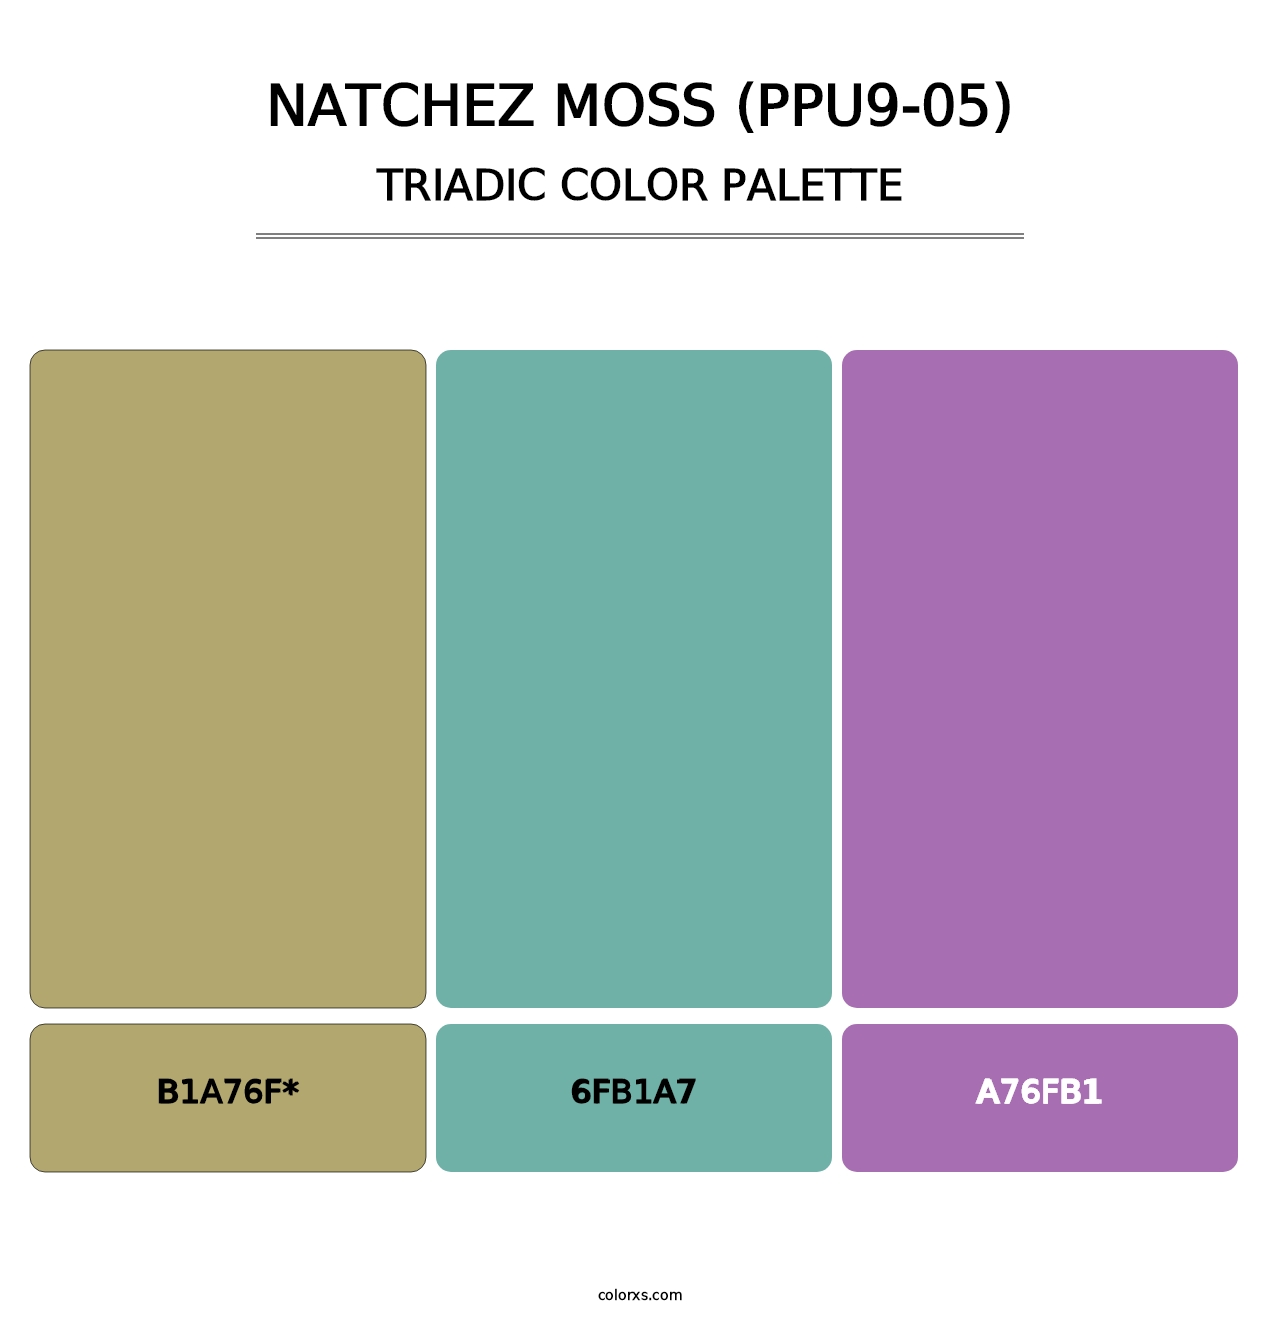 Natchez Moss (PPU9-05) - Triadic Color Palette